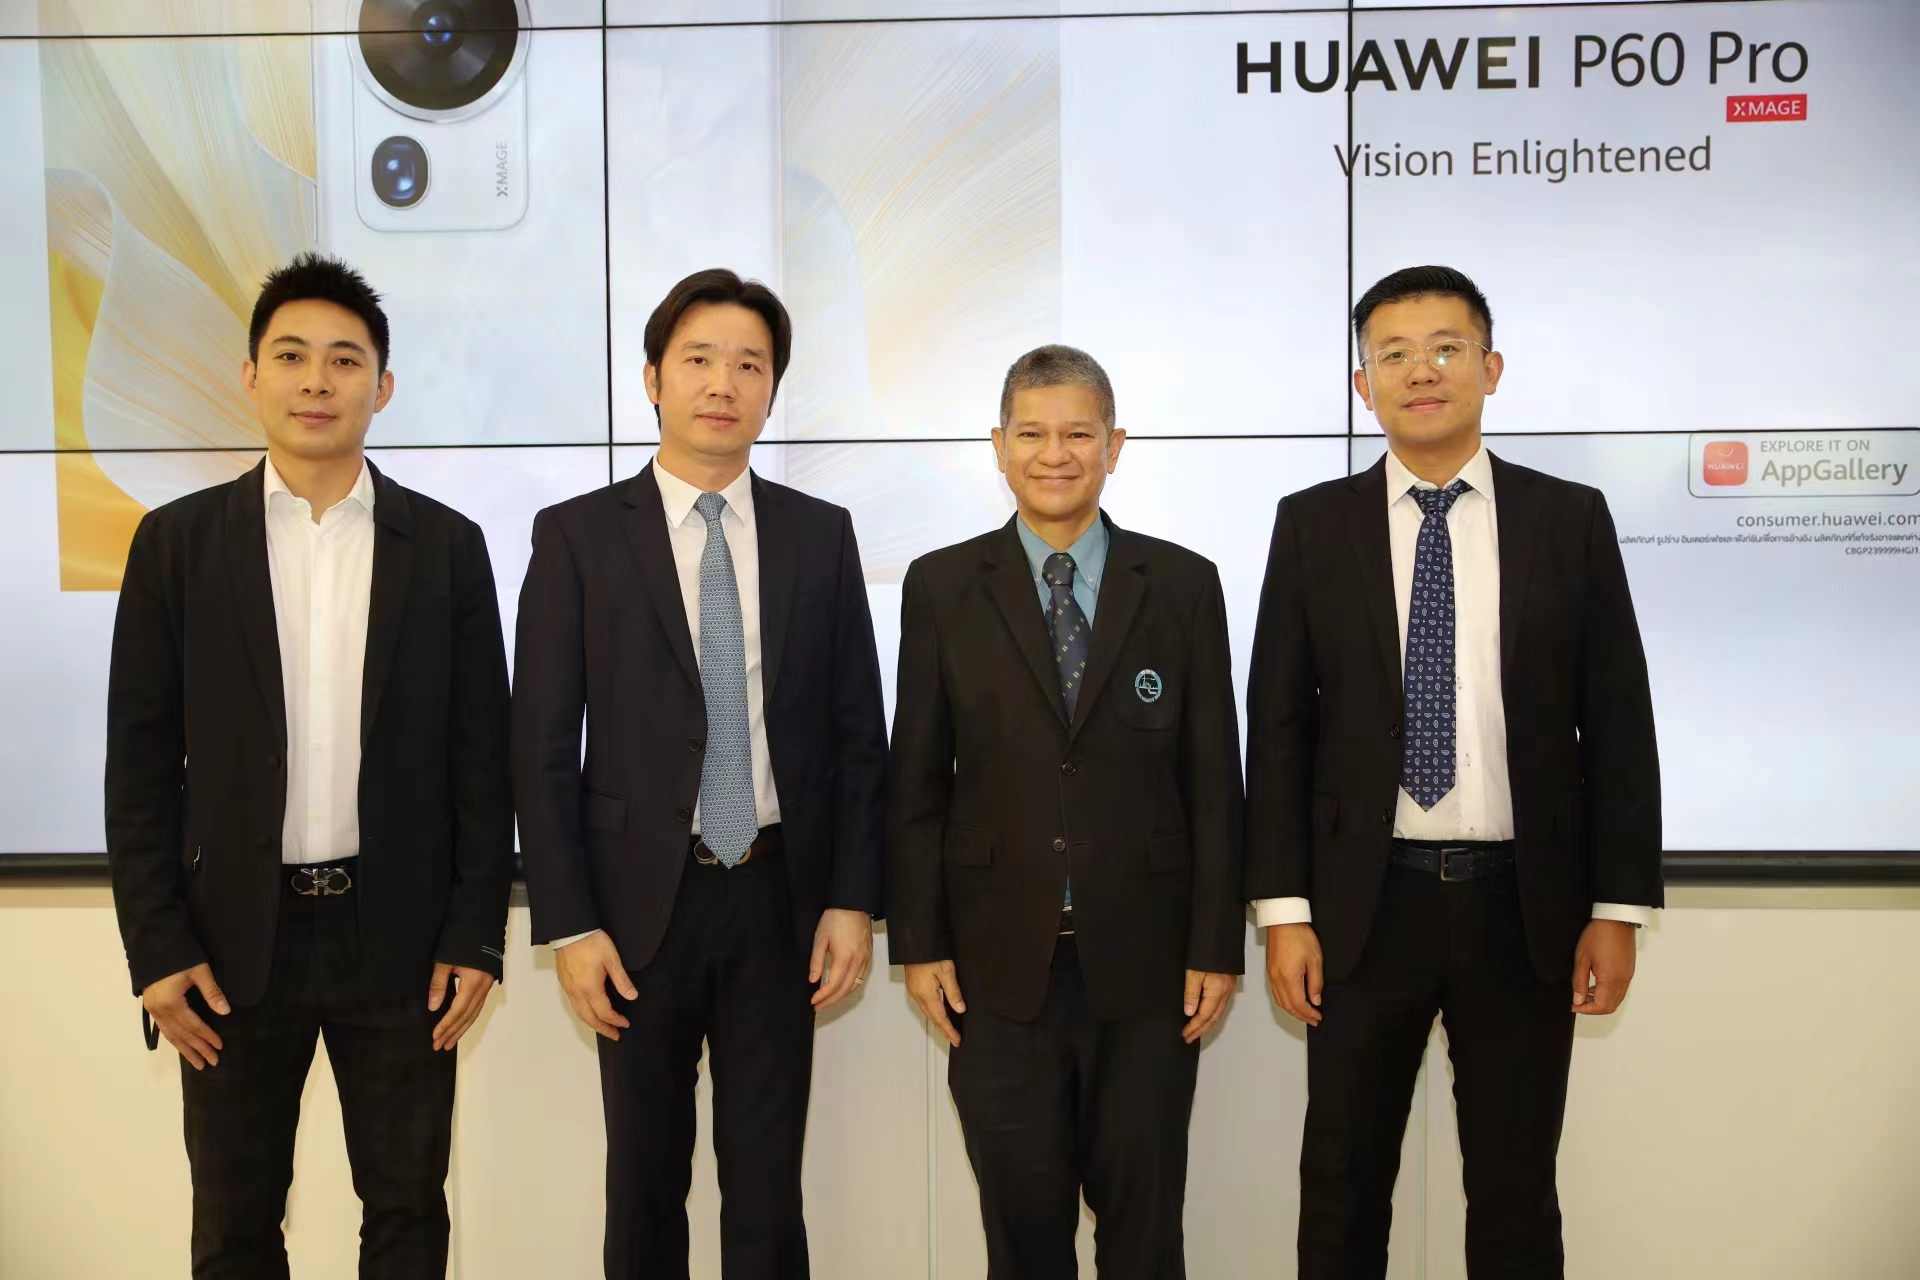 หัวเว่ย ร่วมมือกับ การท่องเที่ยวแห่งประเทศไทย เปิดตัว HUAWEI P60 Pro นำเทคโนโลยีกล้องสมาร์ทโฟนสร้างสรรค์ผลงานส่งเสริมการท่องเที่ยวไทย